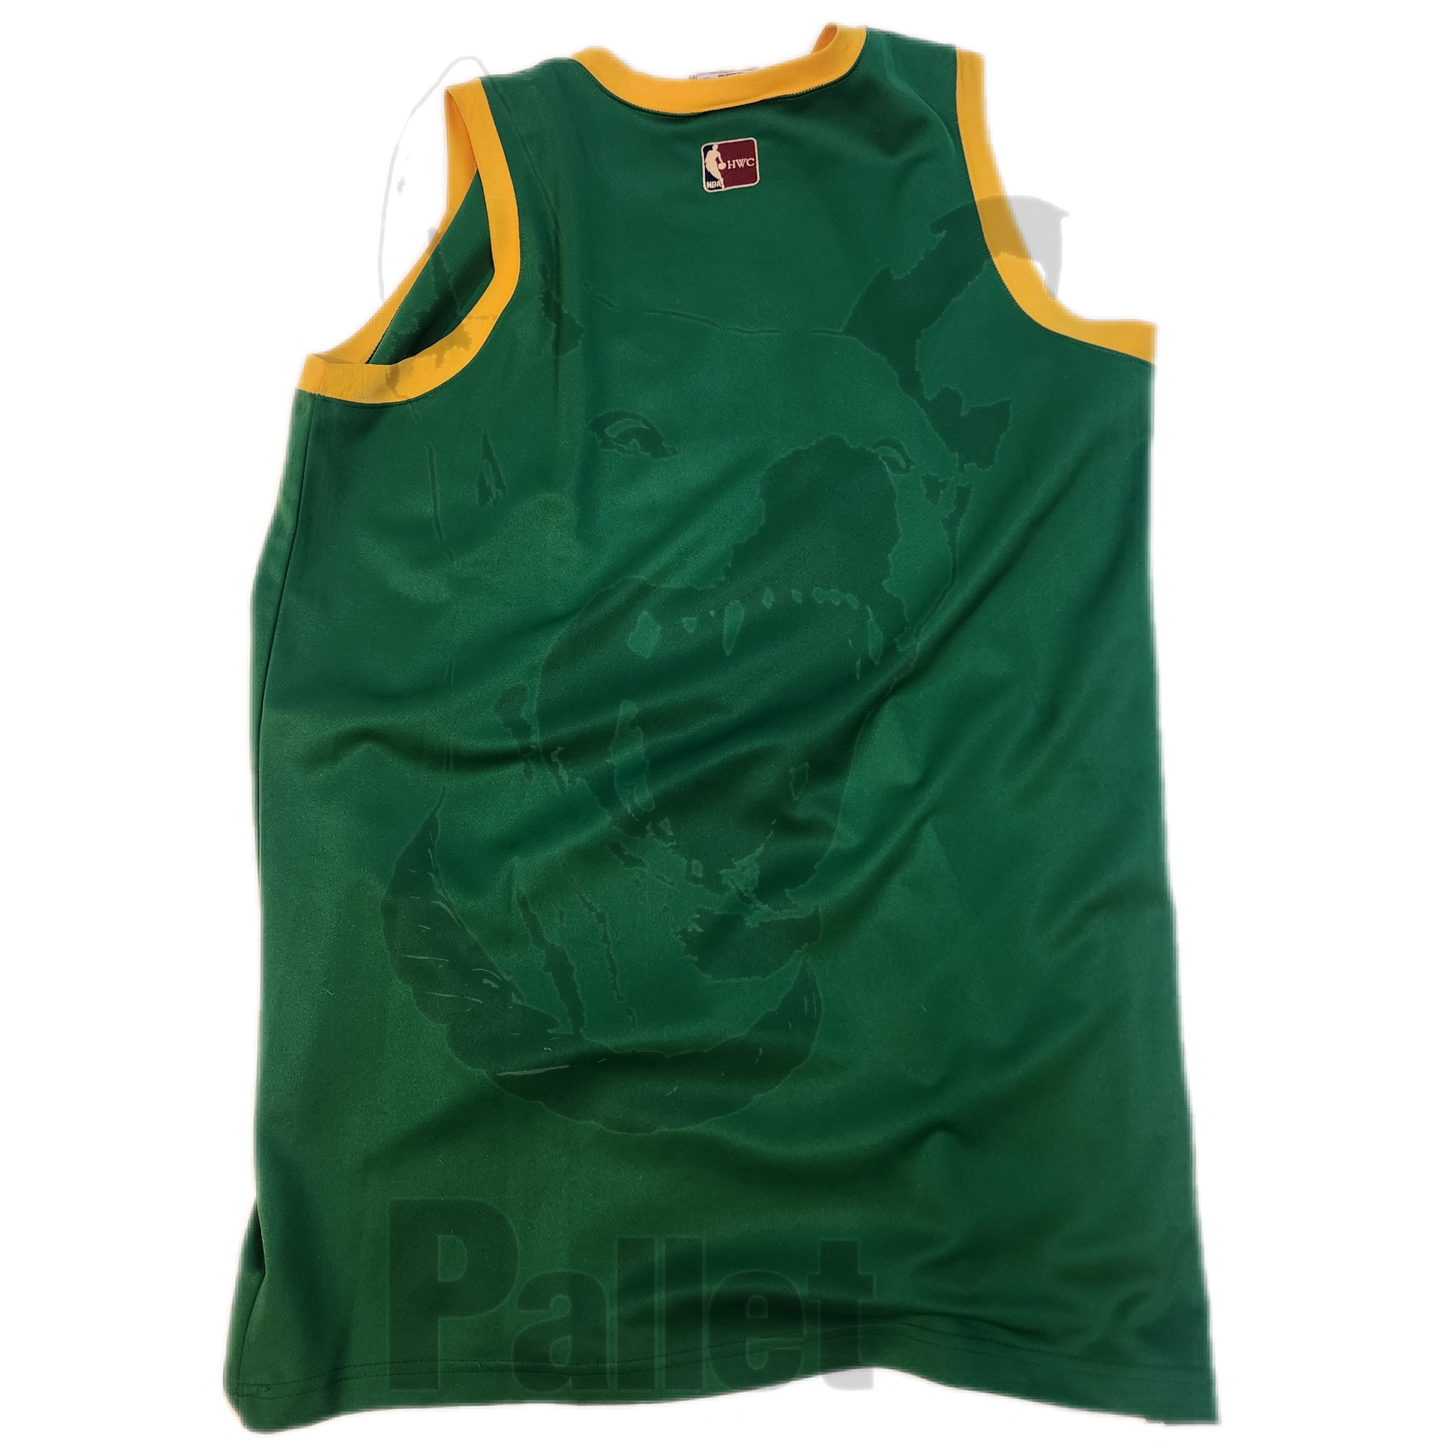 Vintage - "Celtics Bootleg Jersey" - Size XL